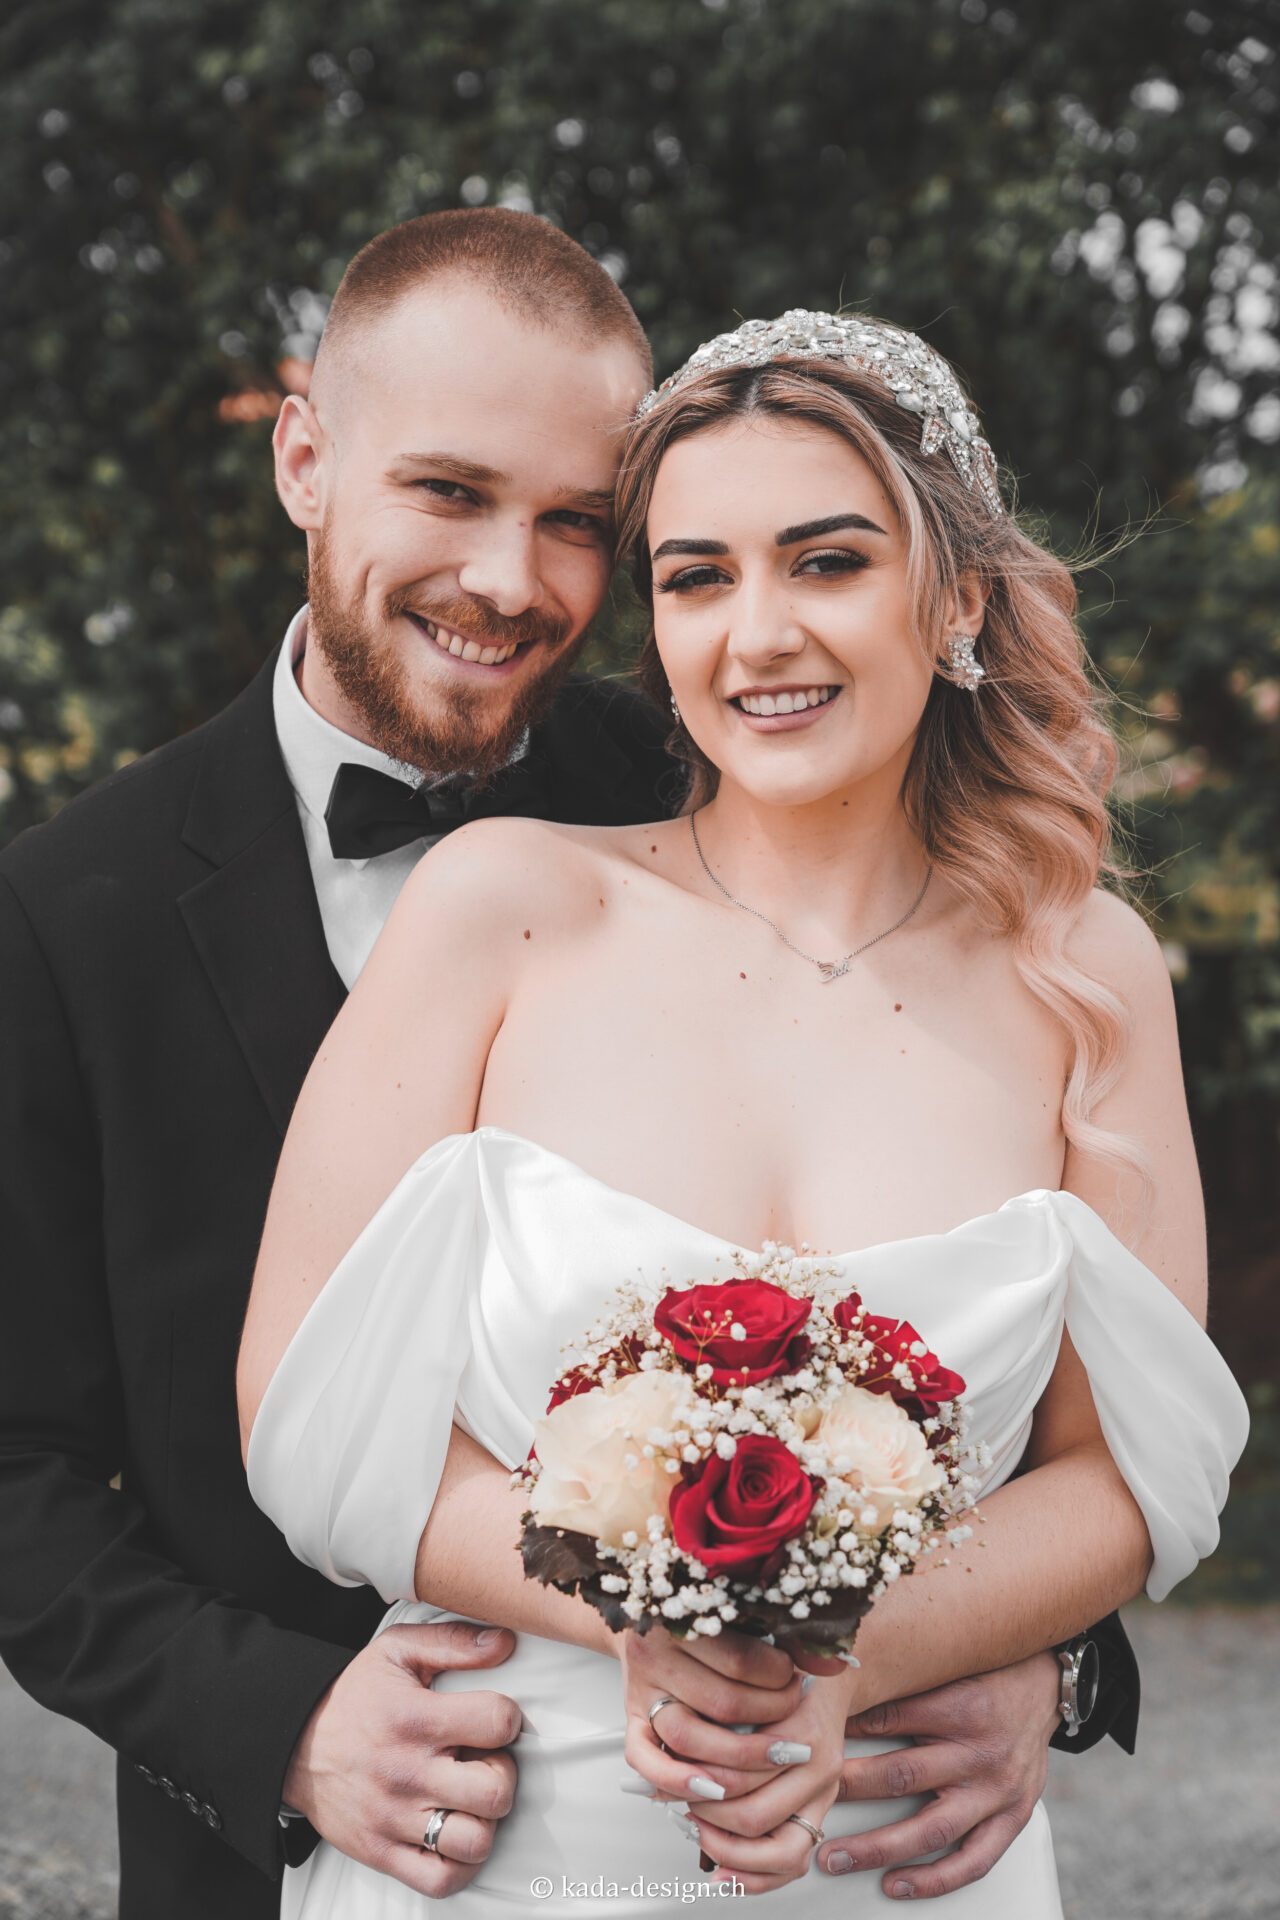 Brautpaar mit Blumenstrauß lächelt.